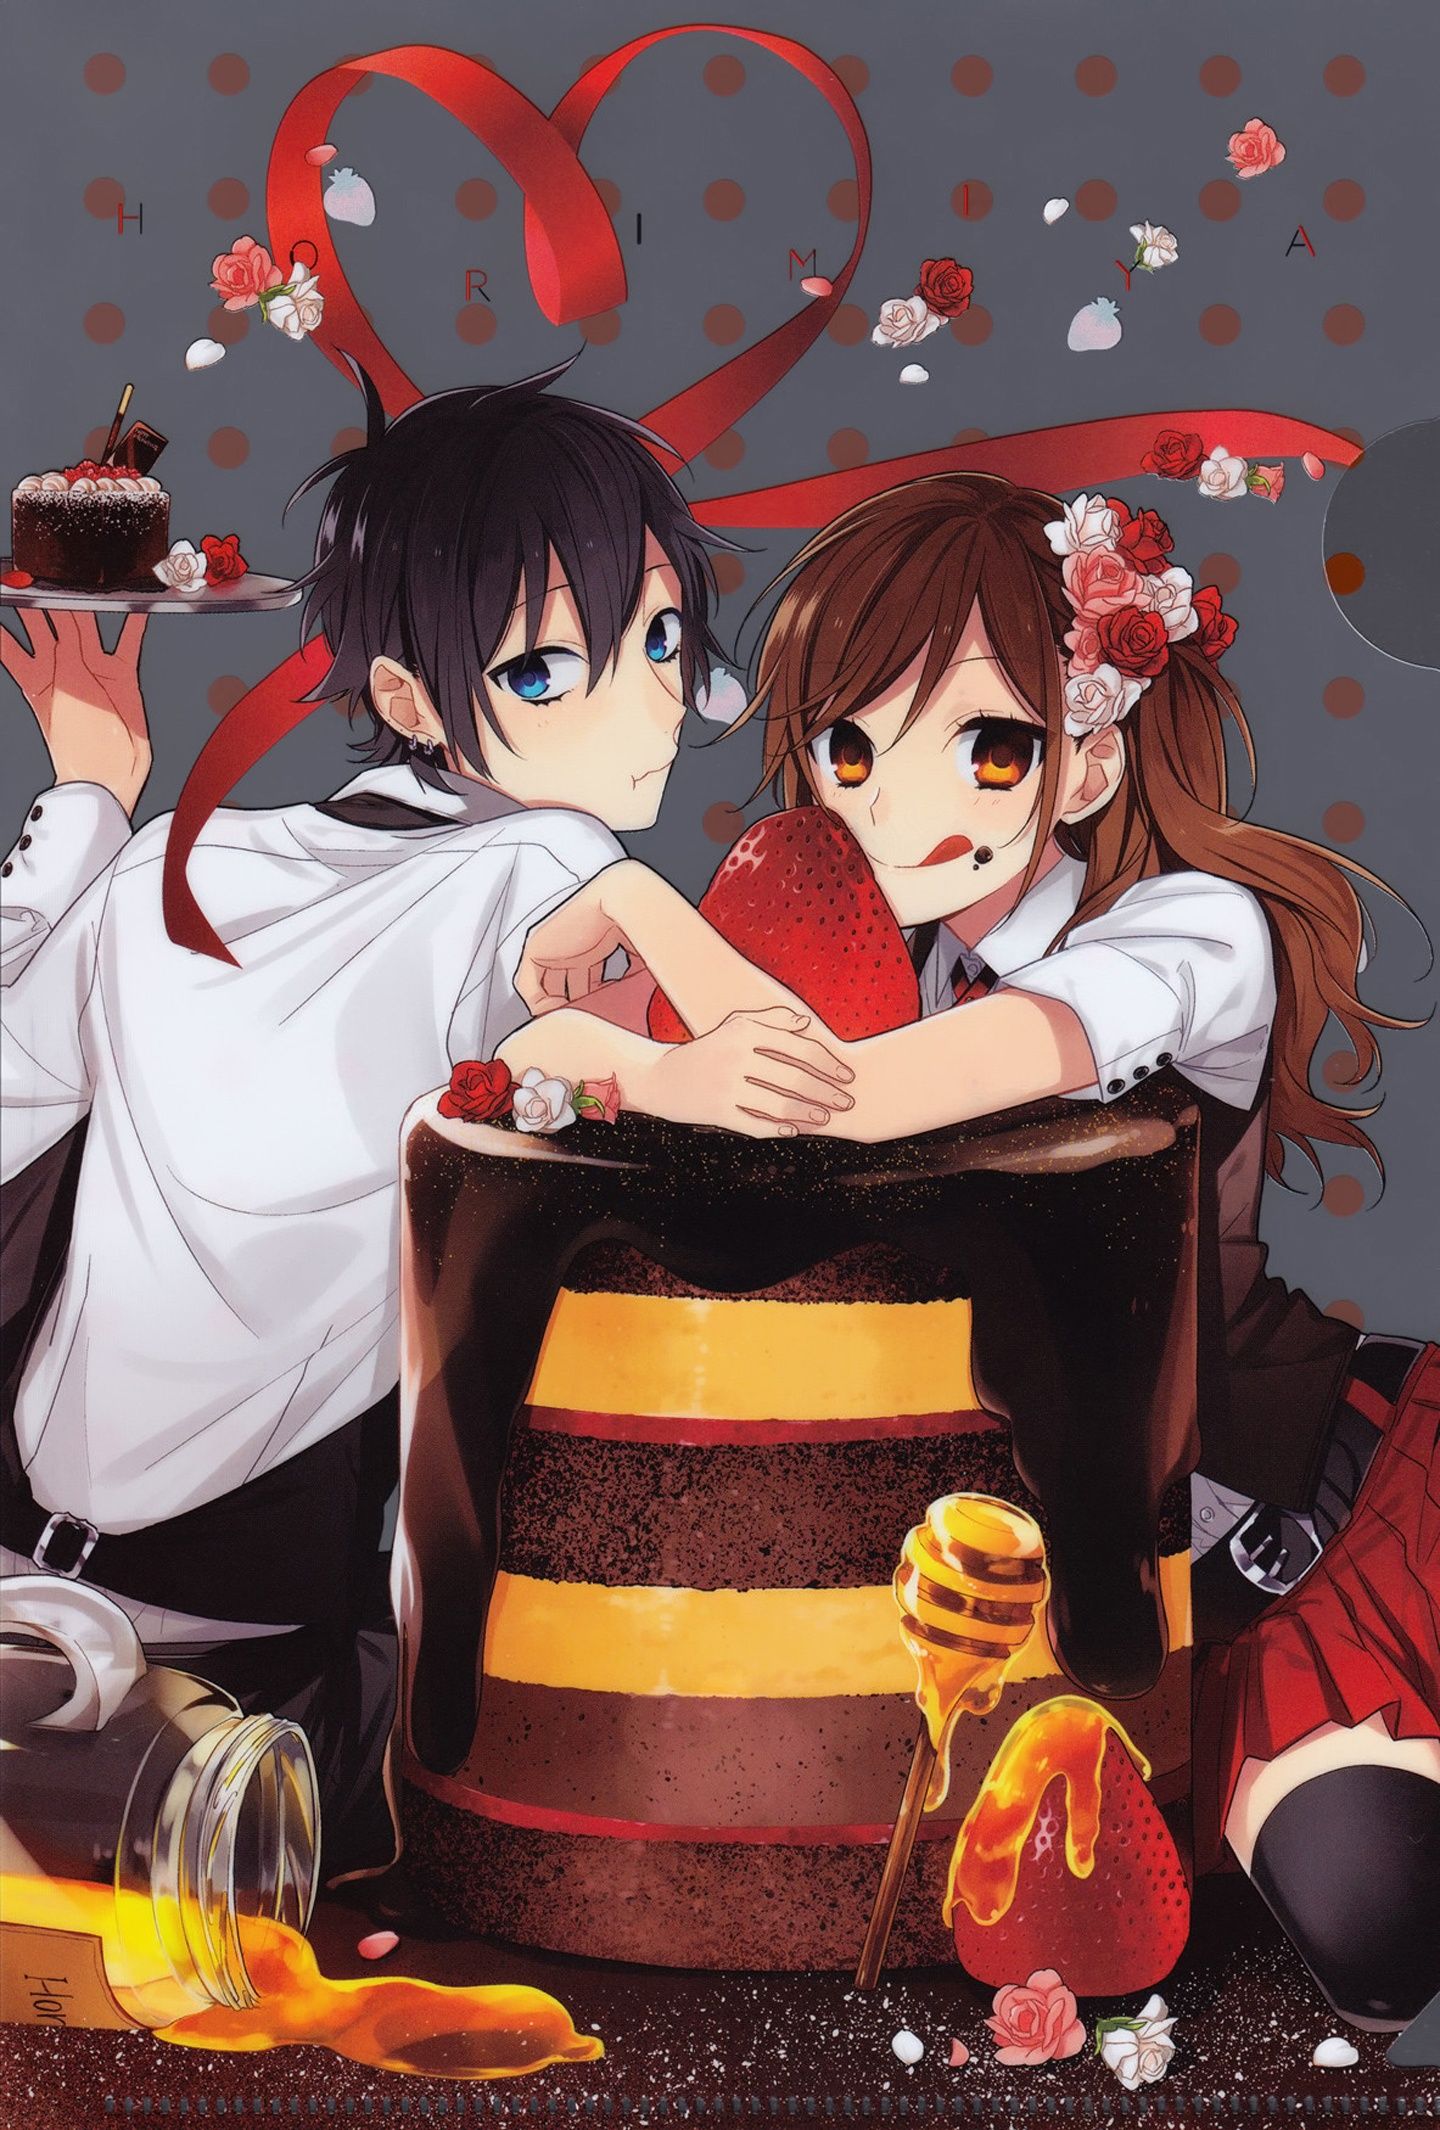 Cake food anime series couple Horimiya rose wallpaperx2130